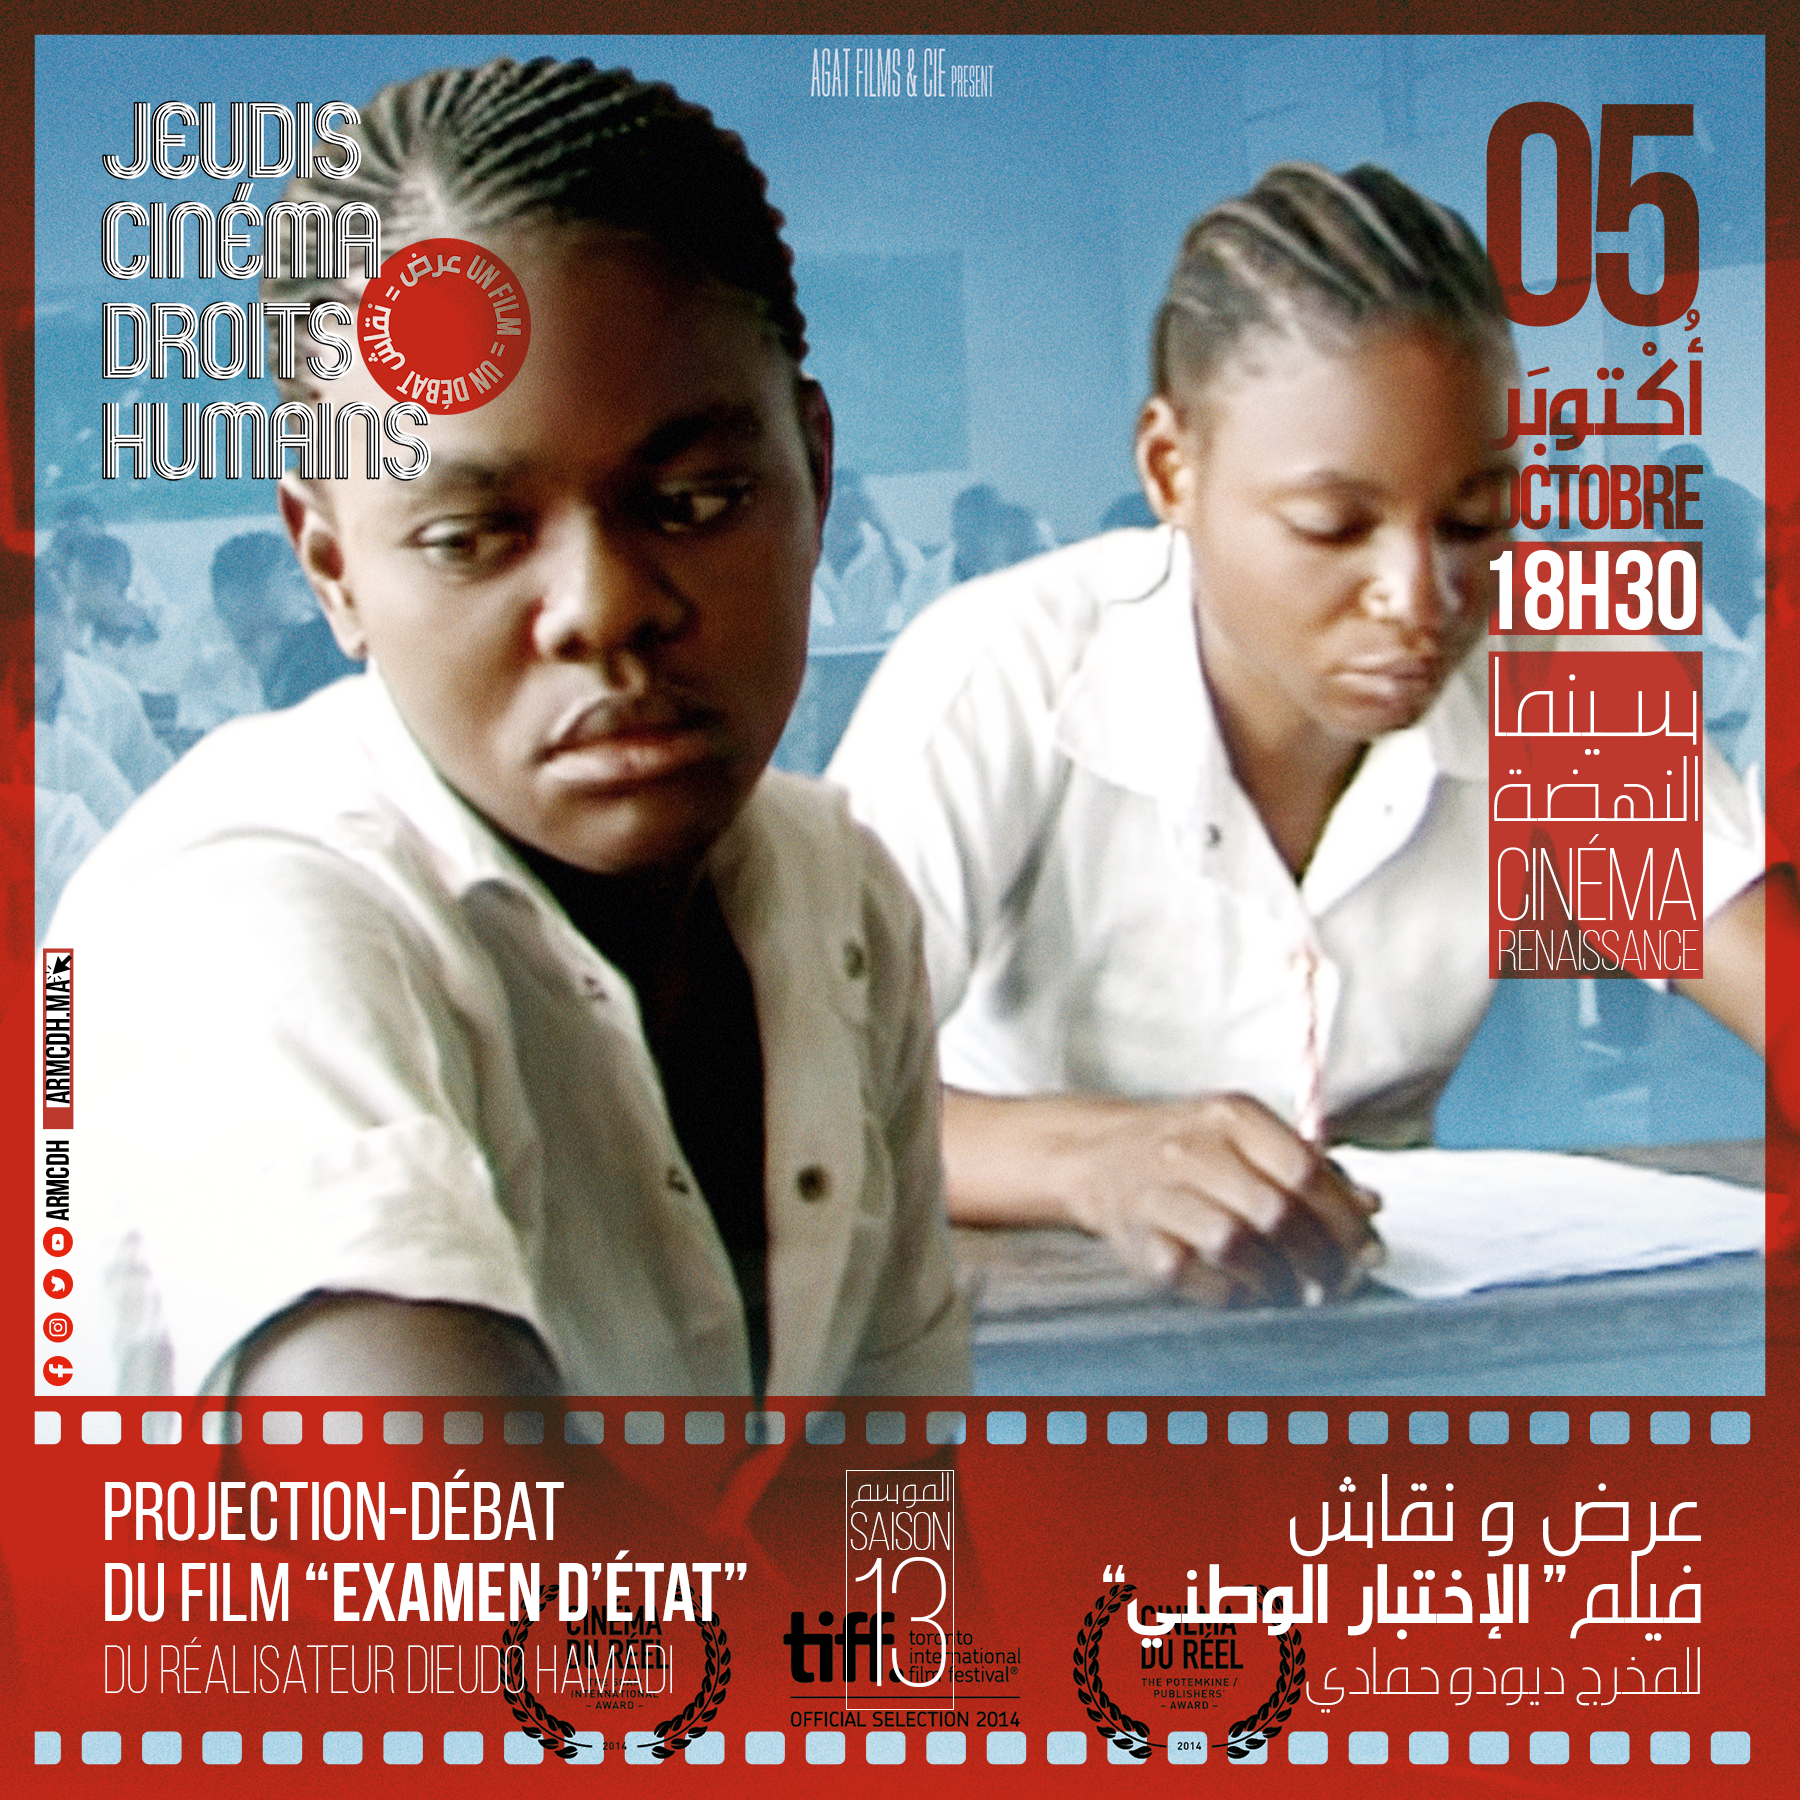 Lancement de la 13ème Saison des Jeudis Cinéma Droits Humains (JCDH) avec le Film "Examen d'État" de Dieudo Hamadi: Une exploration des Défis Éducatifs Actuels